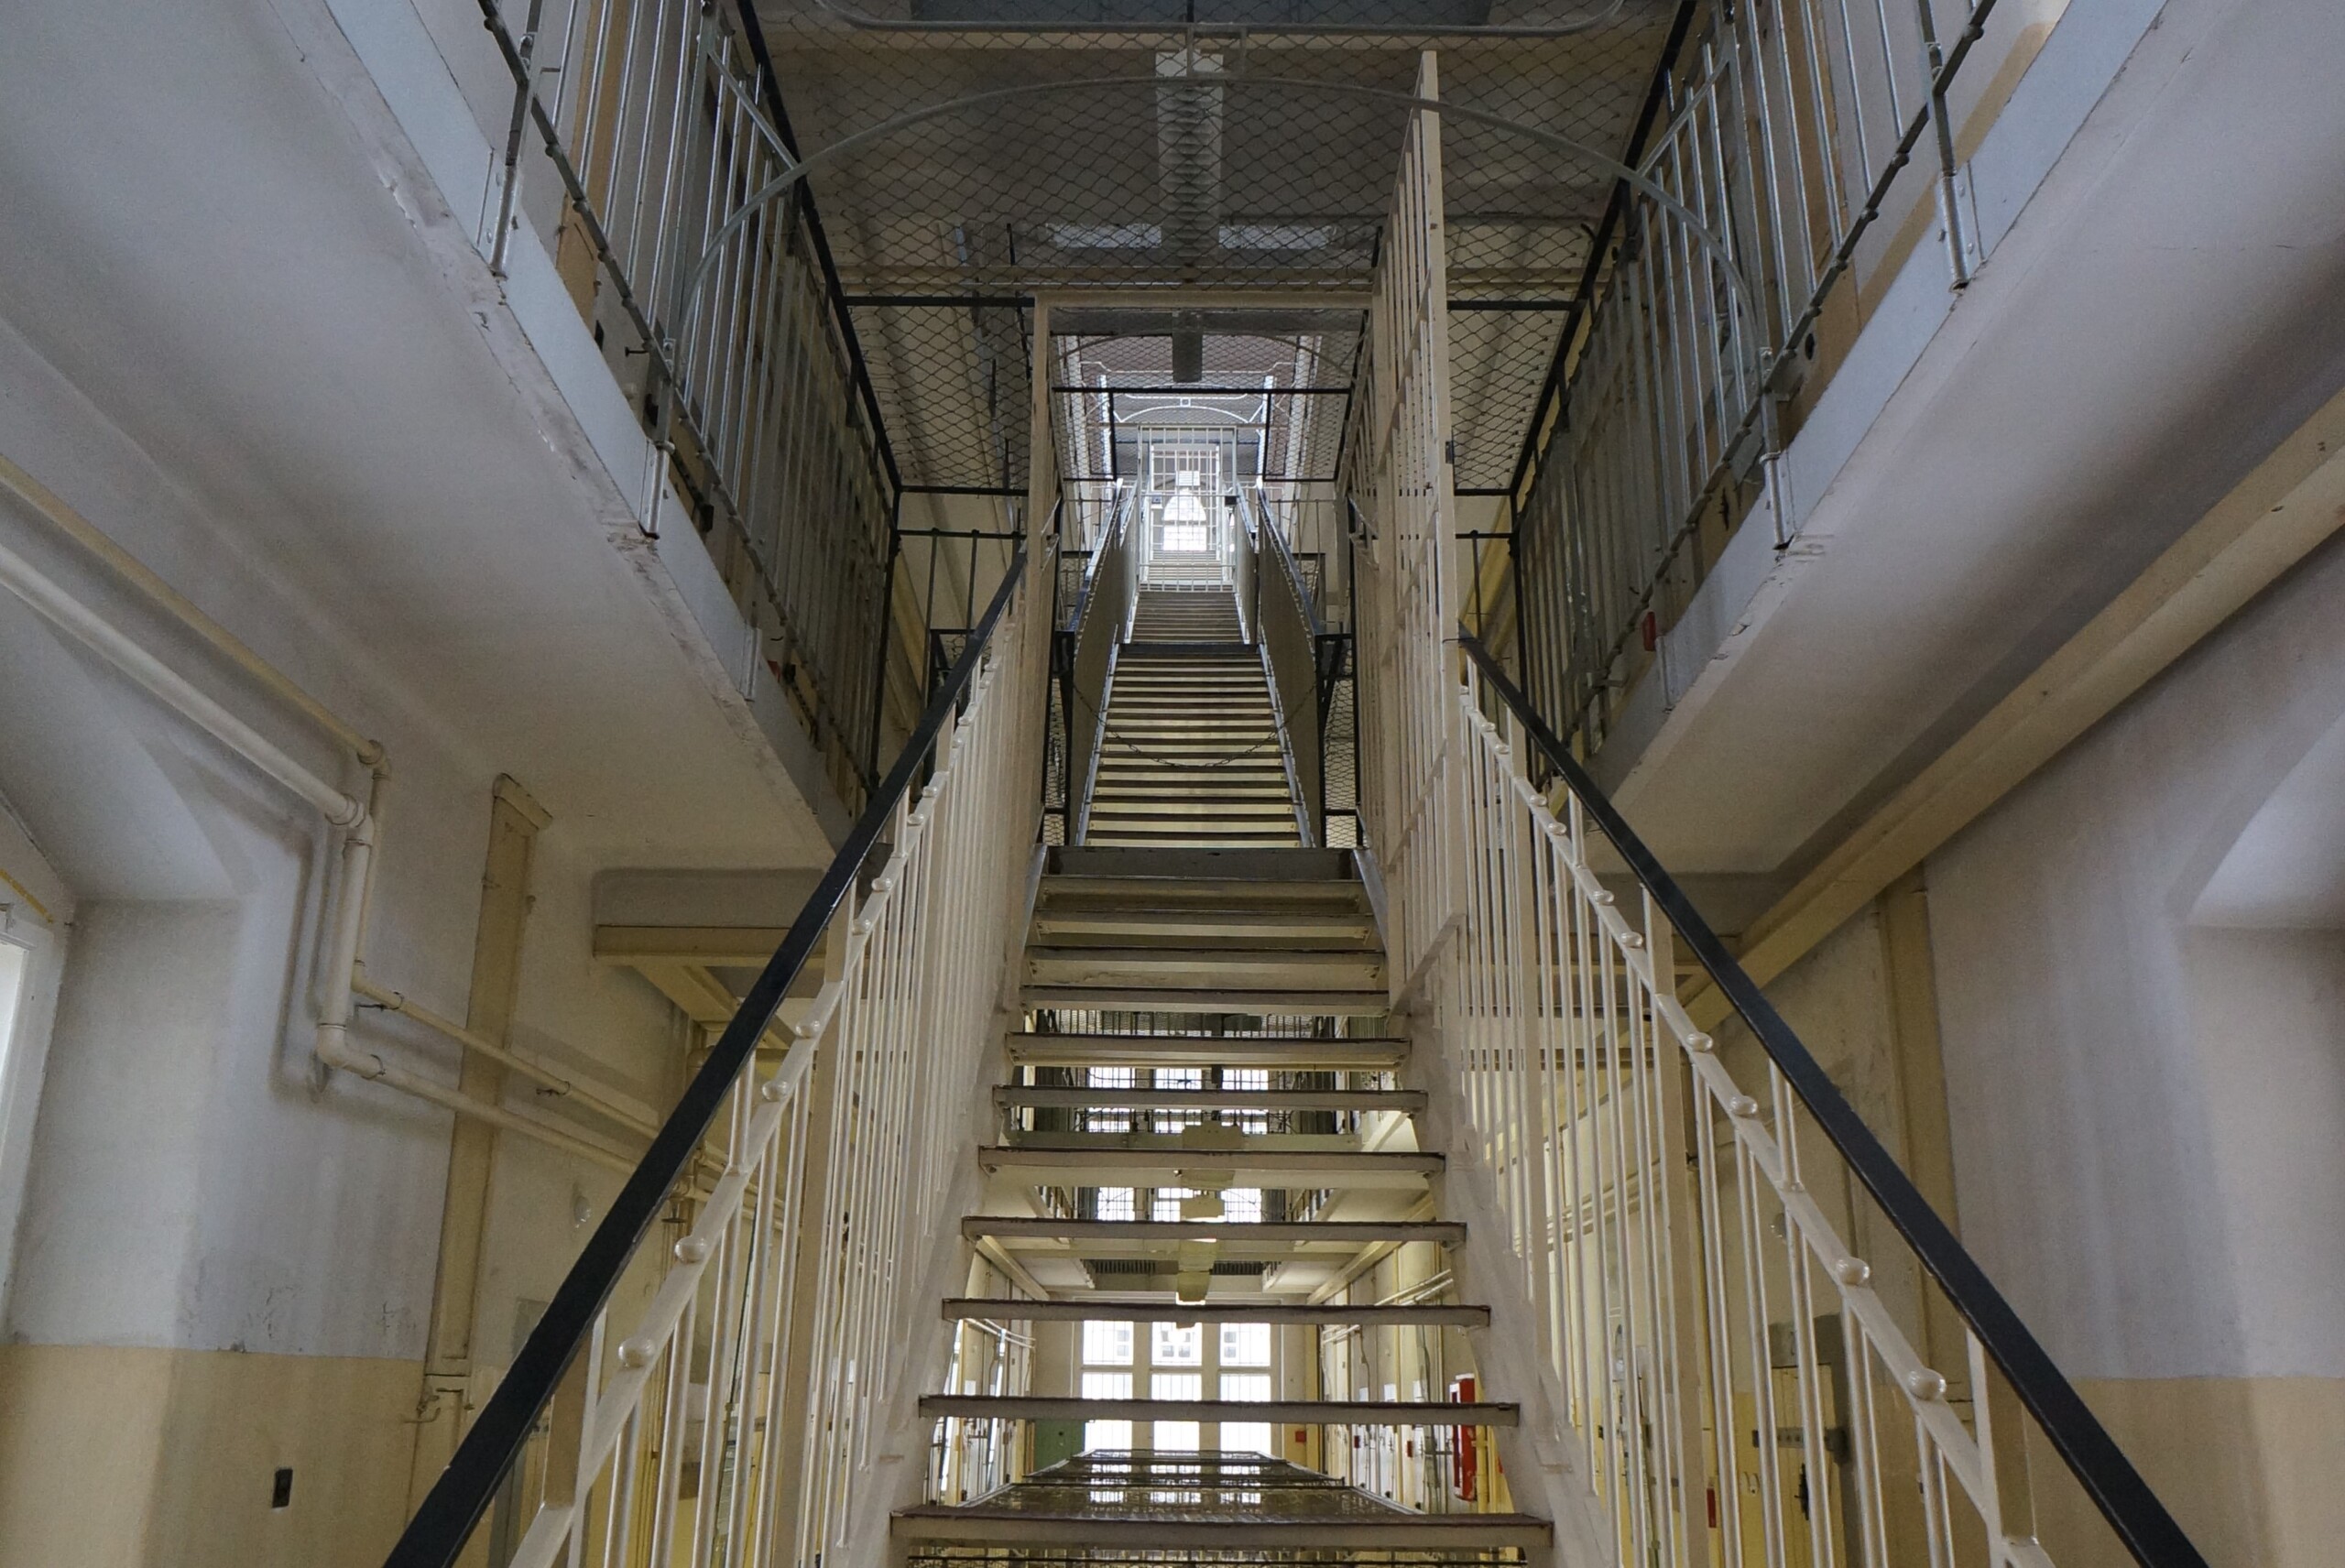 Archivbild: "In Prison" by pixelchecker is licensed under CC BY 2.0.